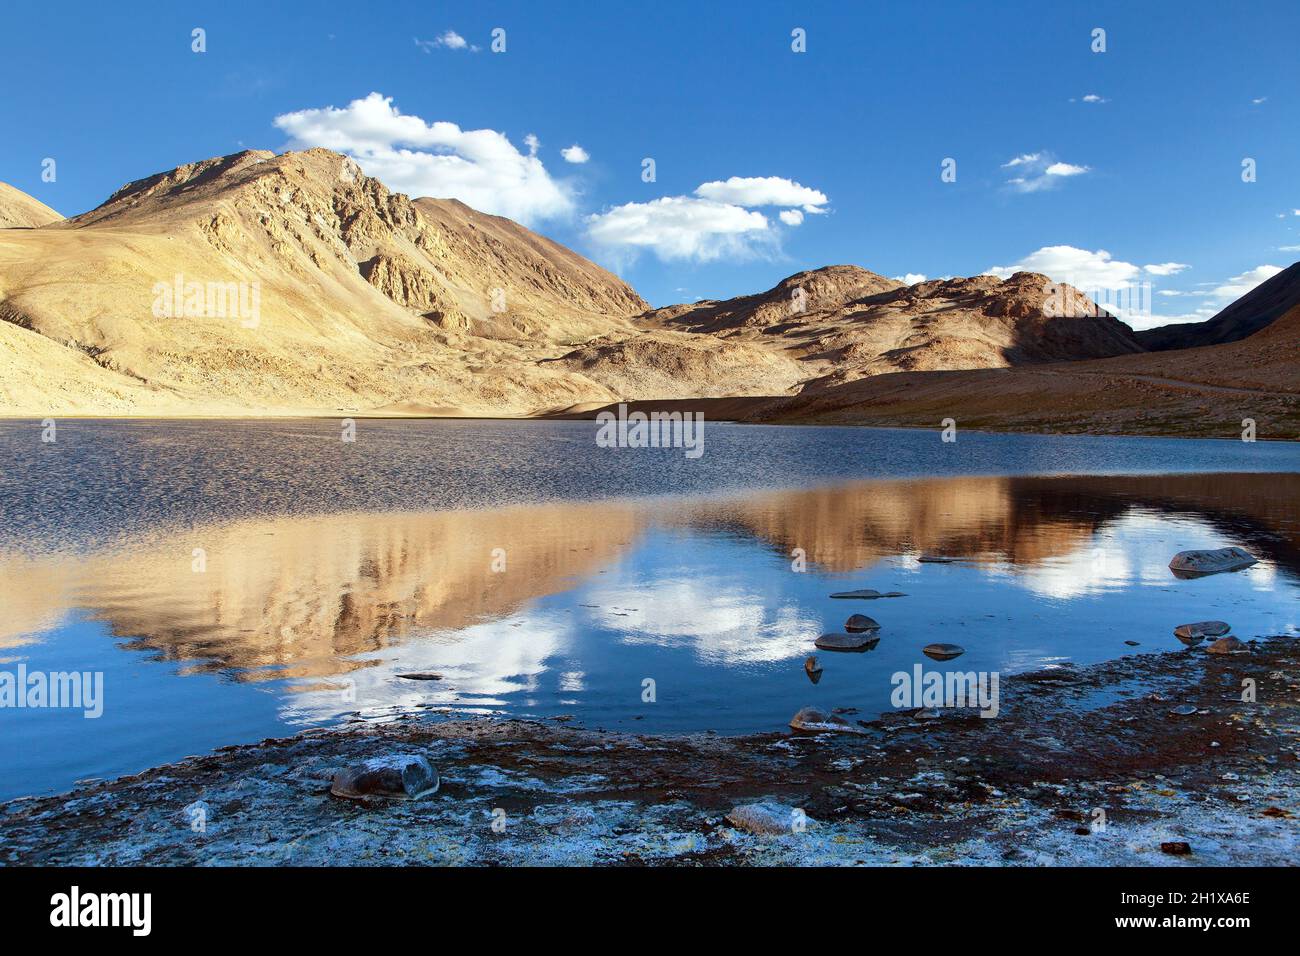 Le montagne del Pamir vicino all'autostrada del Pamir, la vista serale del piccolo lago e dei monti che si specchiano nel lago, Tagikistan Foto Stock